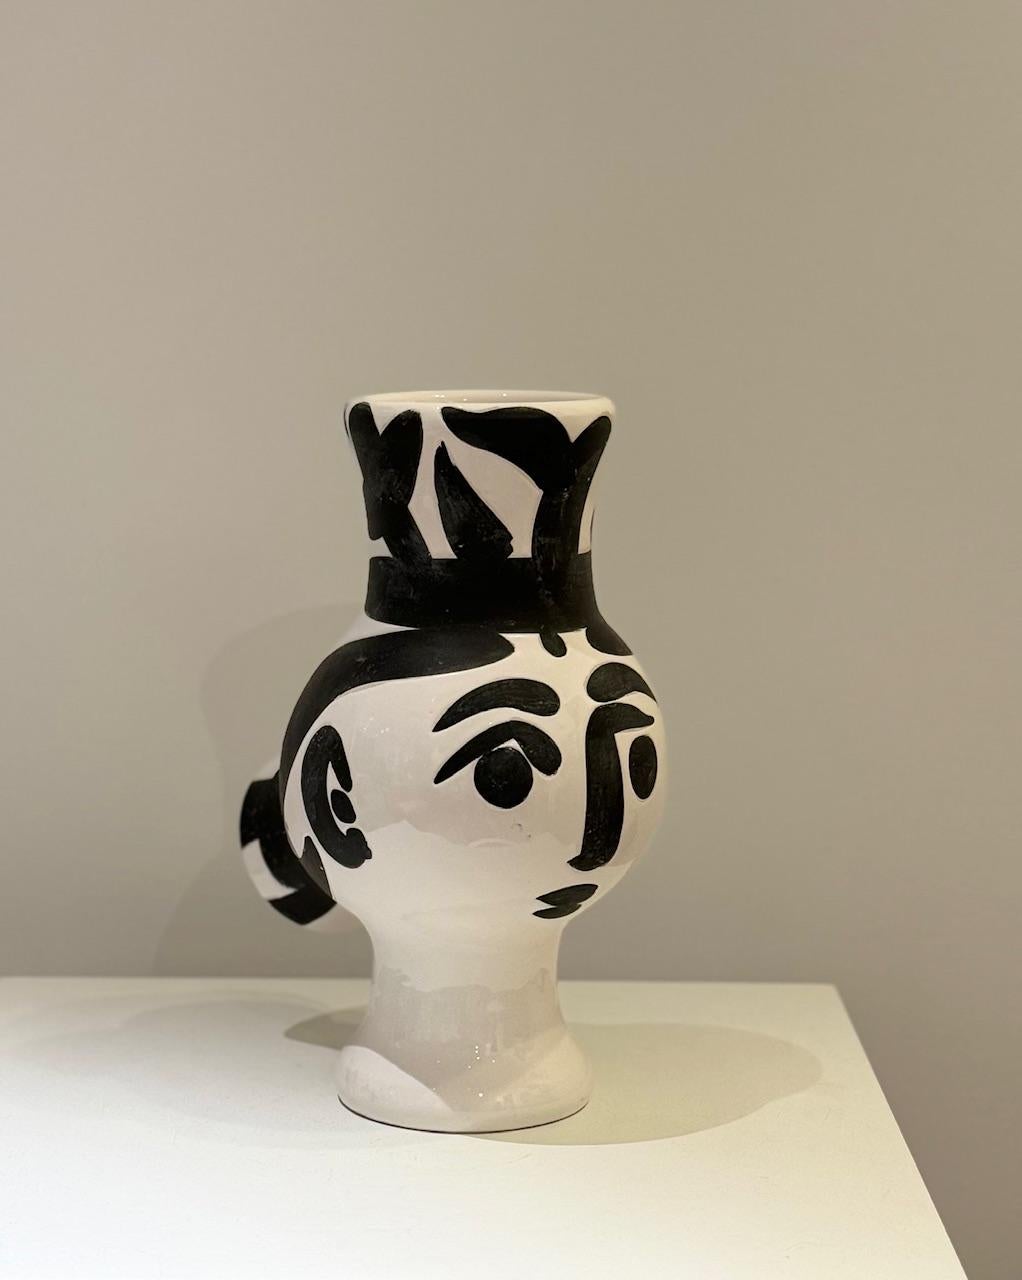 Picasso ( 1881-1973 ) Vase - 1951 (AR # 119)
Vase Terre de faïence peint et partiellement émaillé, d'une édition de 500 exemplaires,  estampillé 